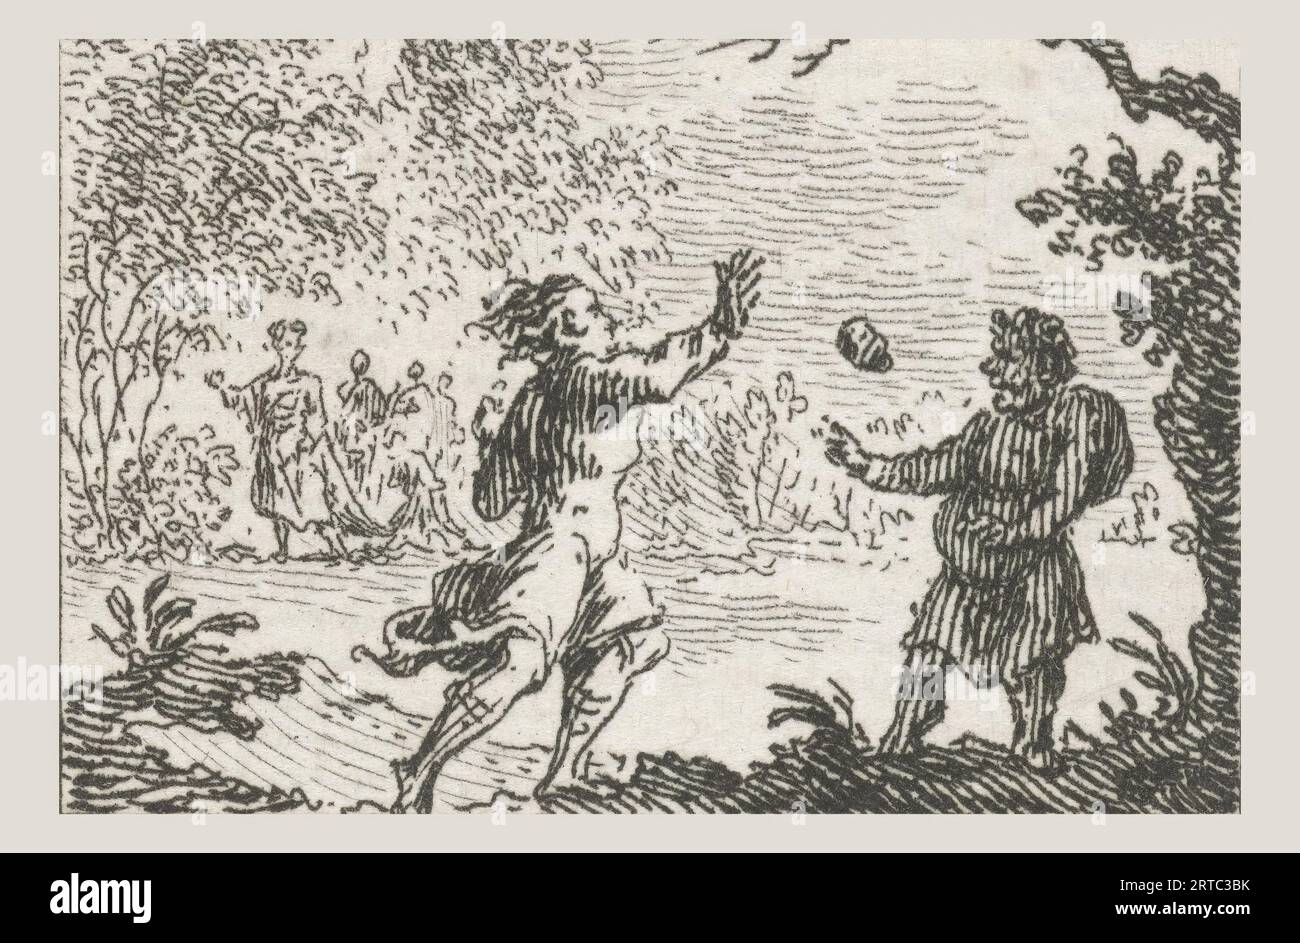 Fabel von Aesopus und eine Tugend, Illustrationen für Fabel Tale von Phaedrus (Serientitel), Aesopus hält seine Hand hoch, um den Stein zu fangen, den ein junger Mann auf ihn wirft, diese Illustration wurde in den äsopischen Fabeln des lateinischen Dichters Phaedrus, Fabeln, gemacht. Simon Fokke (1712–1784) war ein niederländischer Designer, Radierer und Graveur. Geboren in Amsterdam, Niederlande. Entdecken Sie die bezaubernde Welt der Fabeln von Phaedrus, in der zeitlose Weisheit auf fesselndes Geschichtenerzählen trifft. In „die Fabeln von Phaedrus“ begeben Sie sich auf eine Reise durch die lebhaften Landschaften des antiken Roms Stockfoto